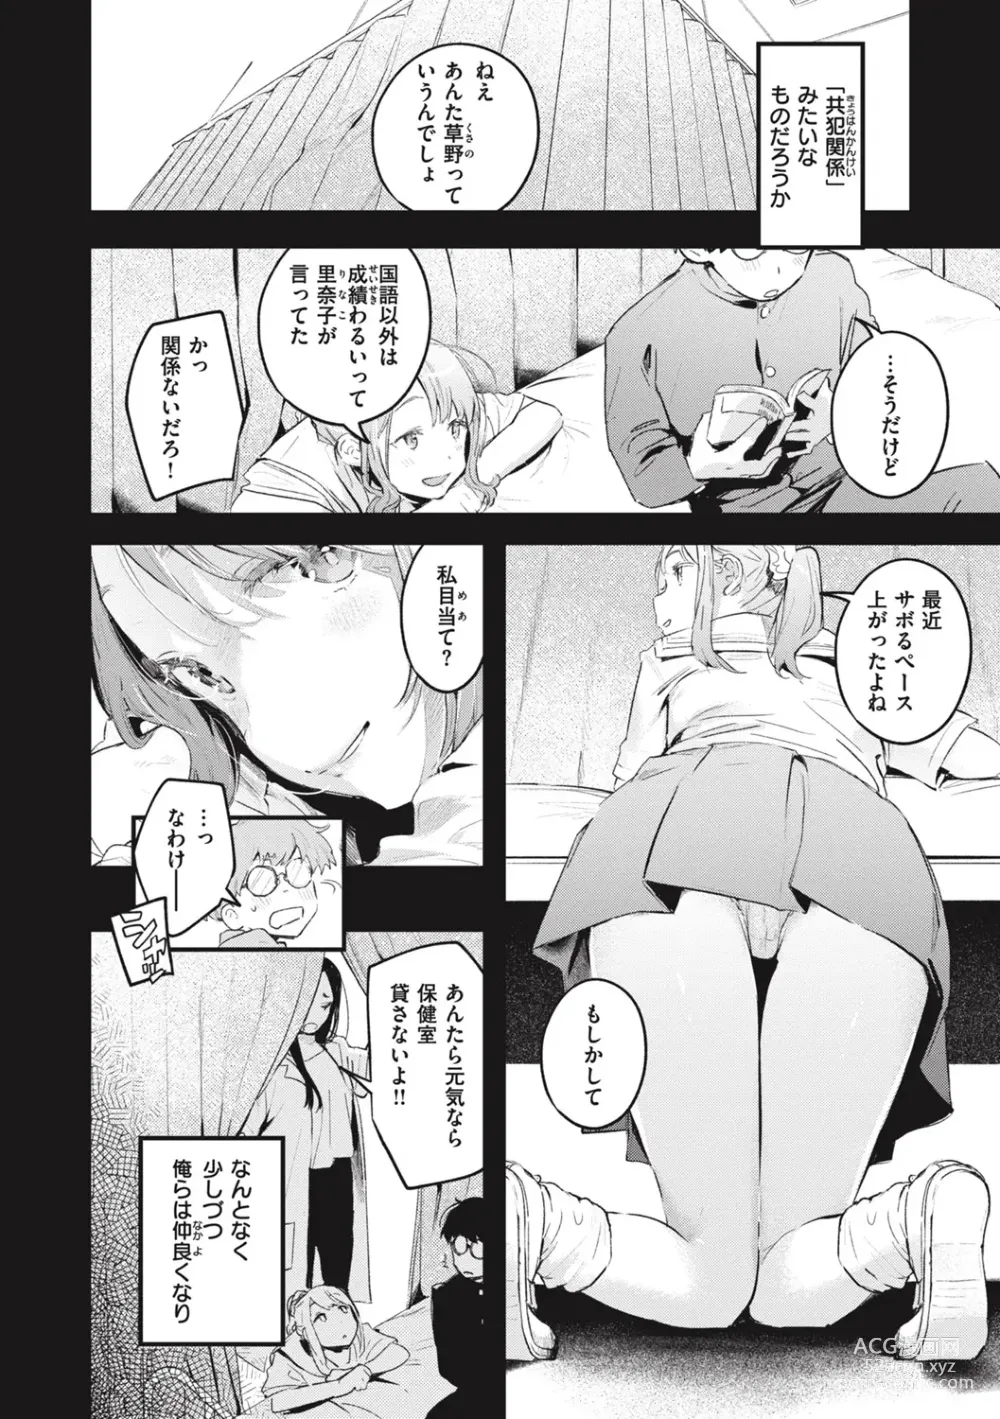 Page 188 of manga Koi no Mukidashi